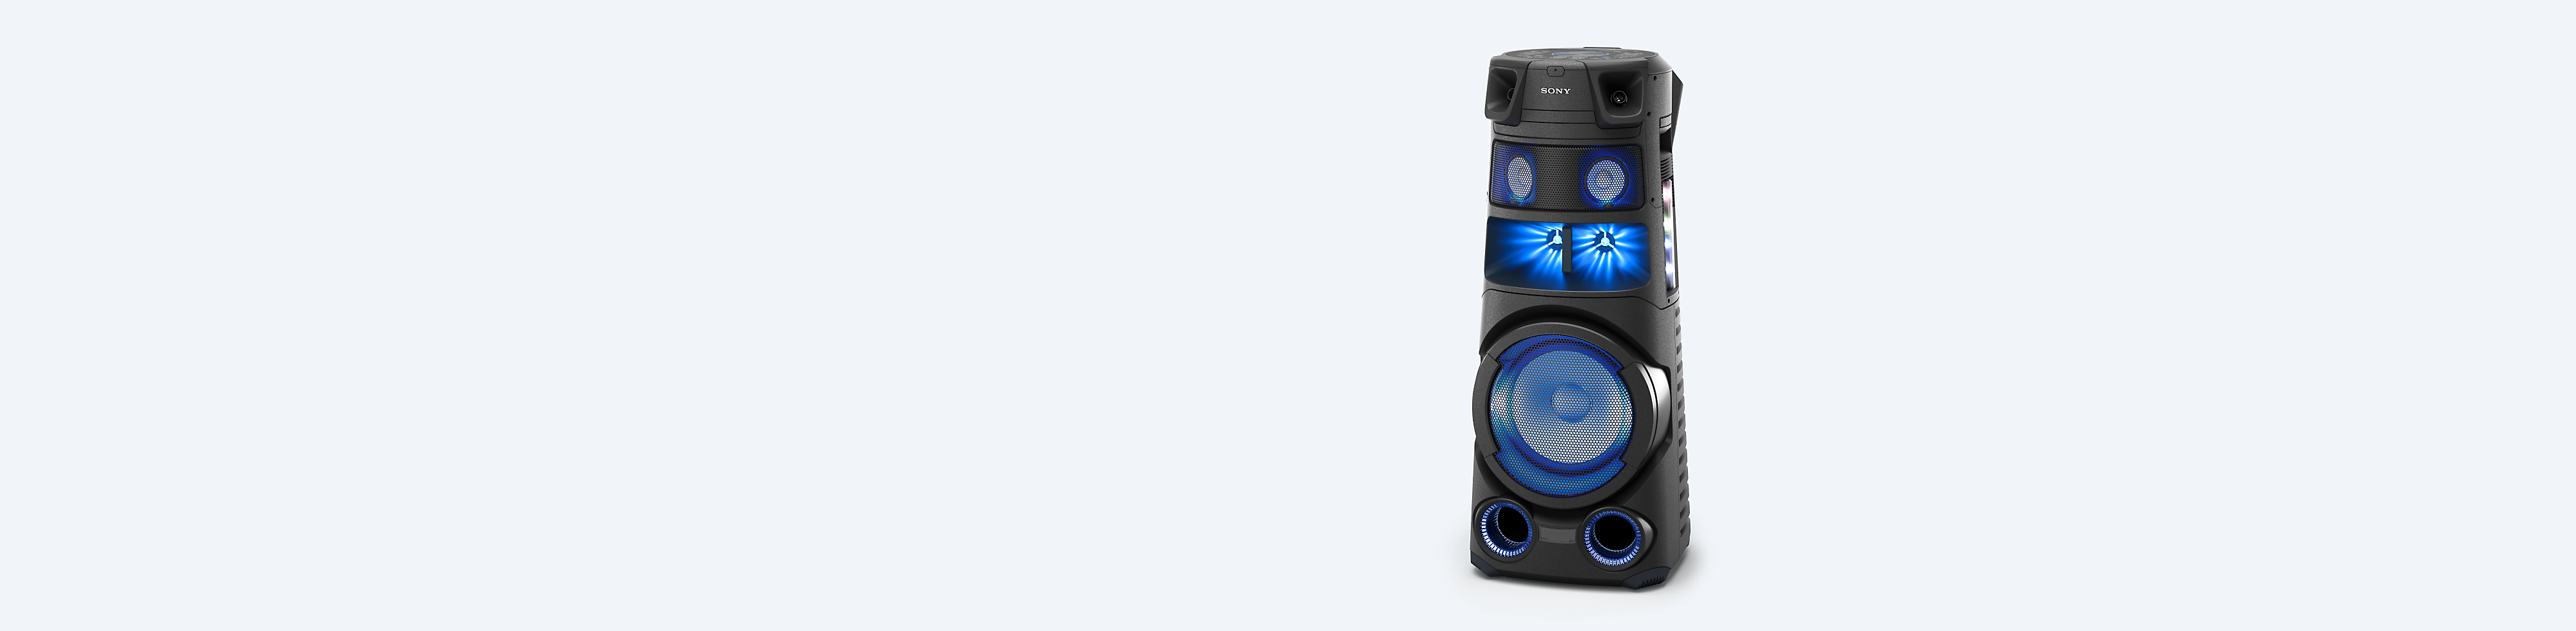 Système audio high-power Sony sur un fond bleu